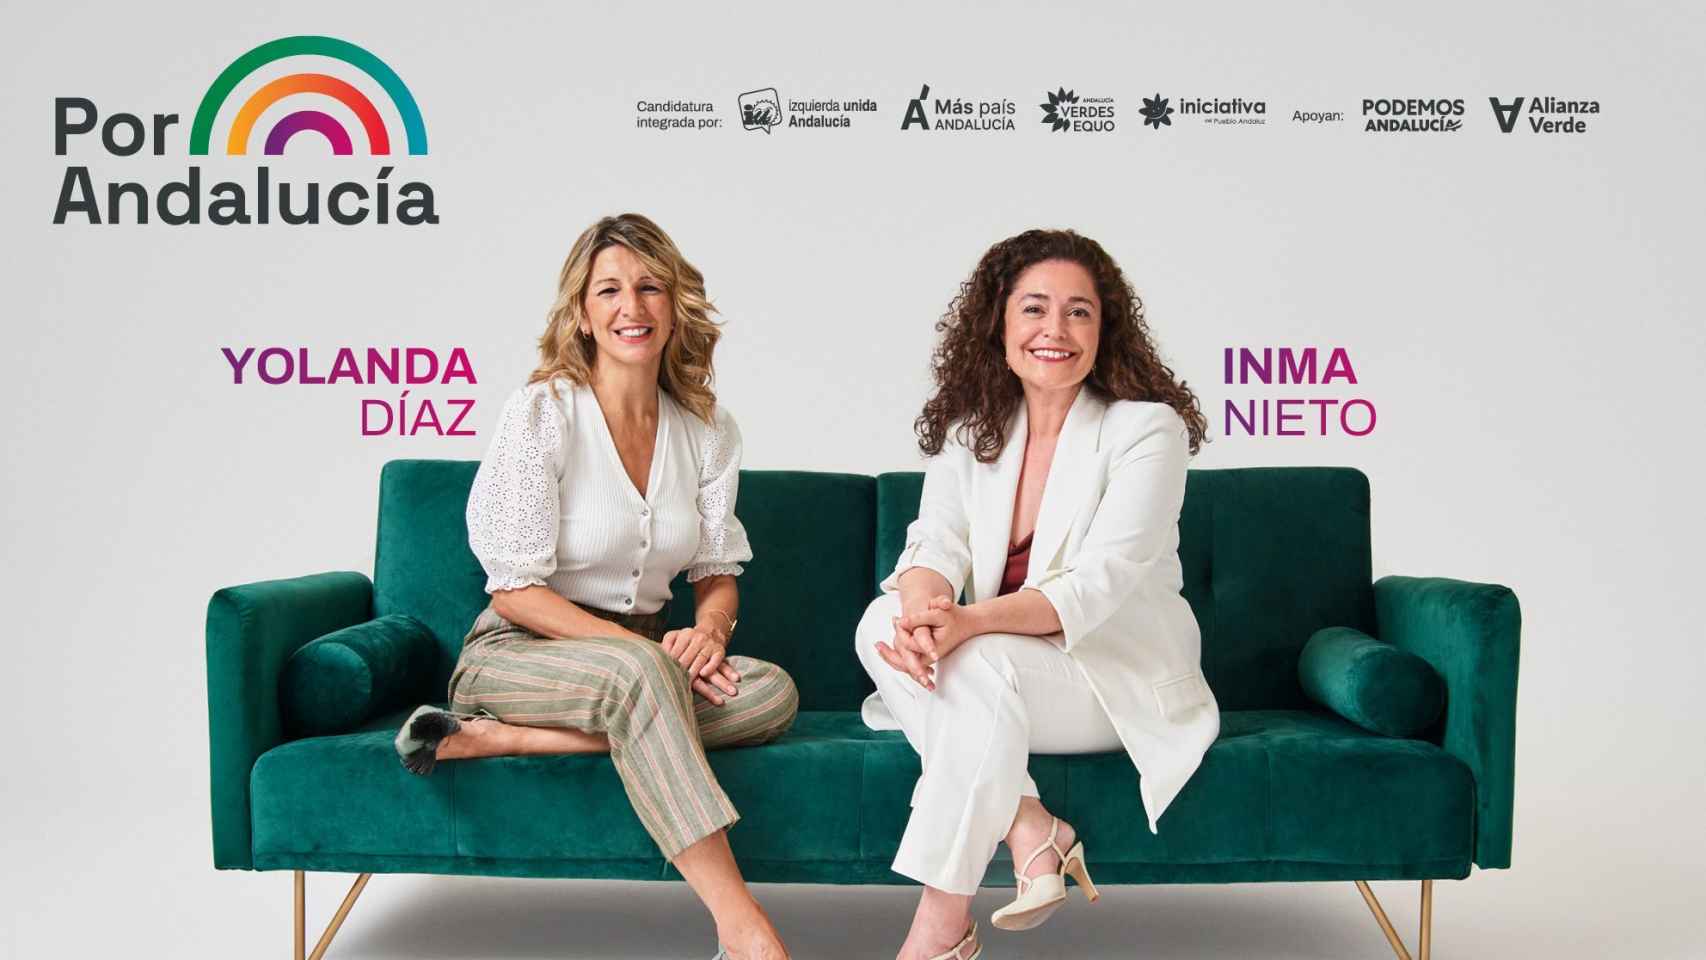 Cartel de la campaña de Por Andalucía. Arriba a la derecha, Podemos apoya.